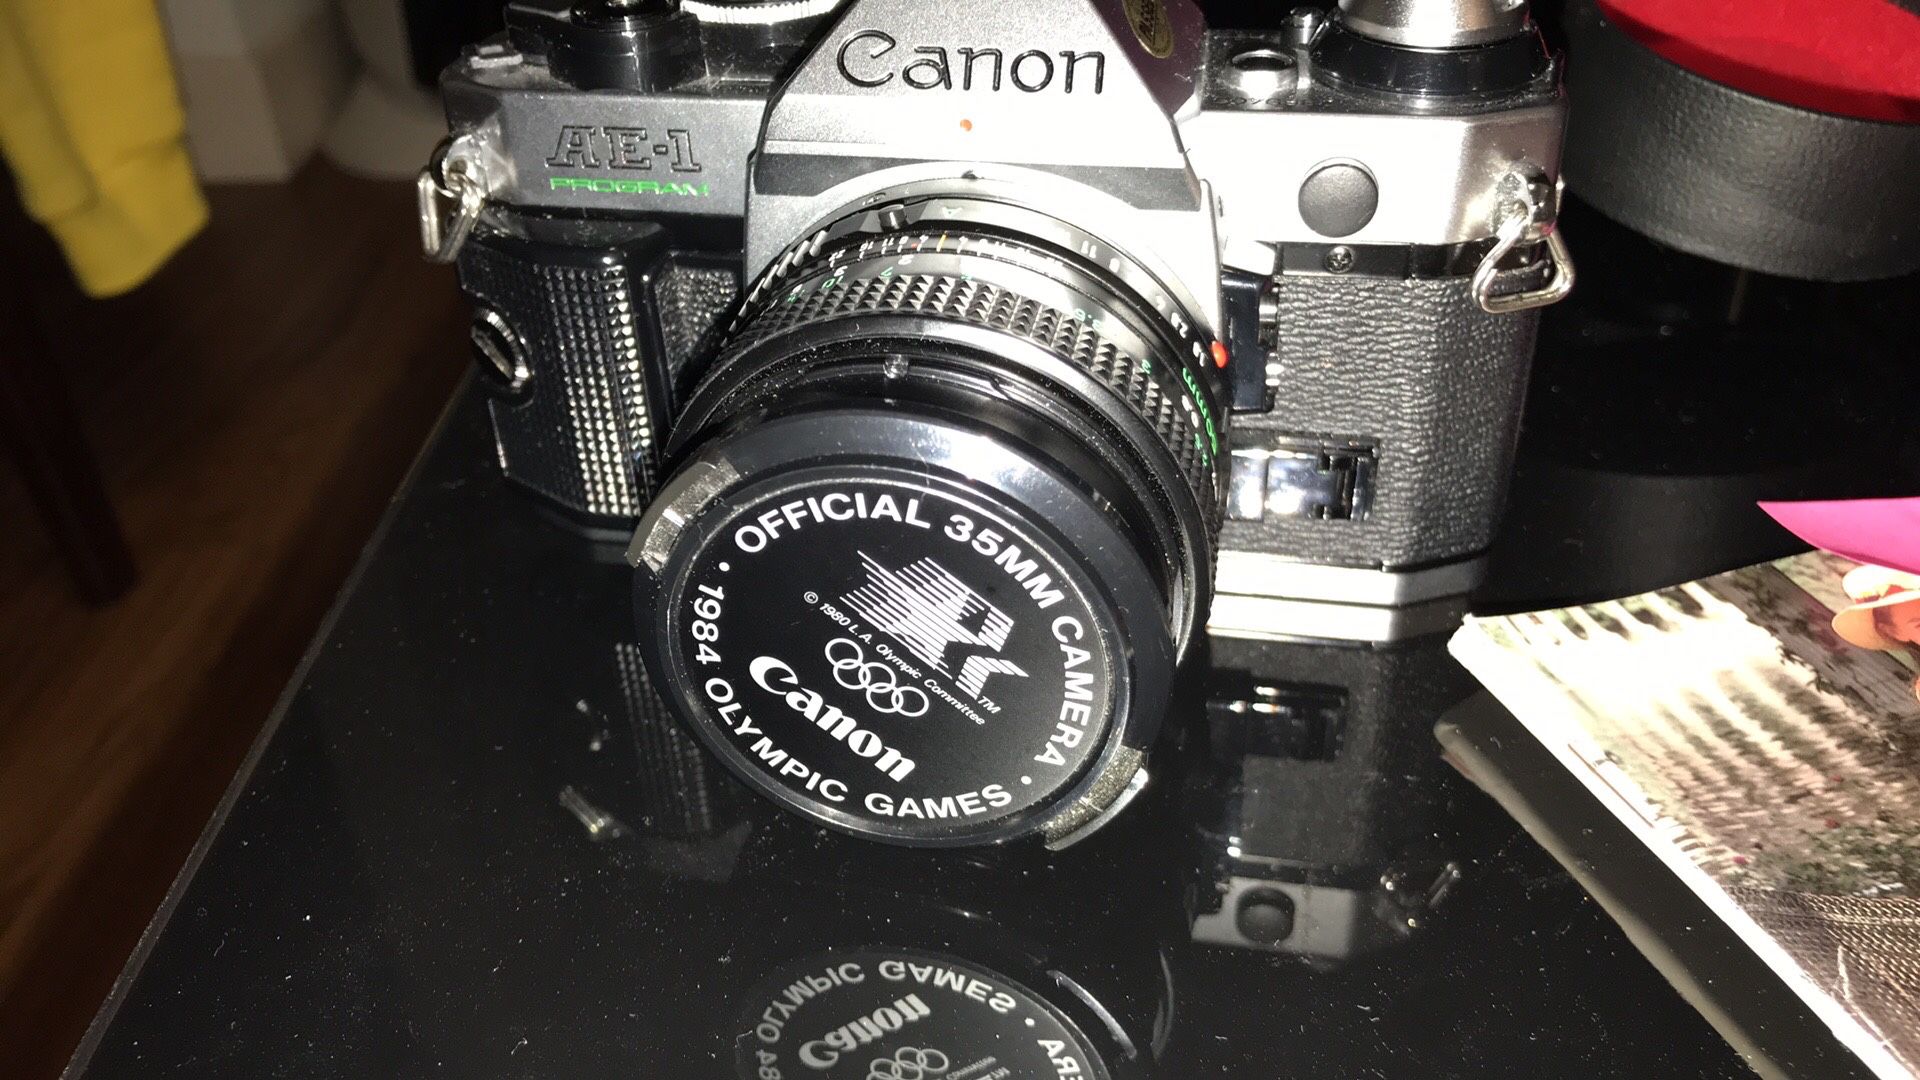 Canon Camera AE1 like new